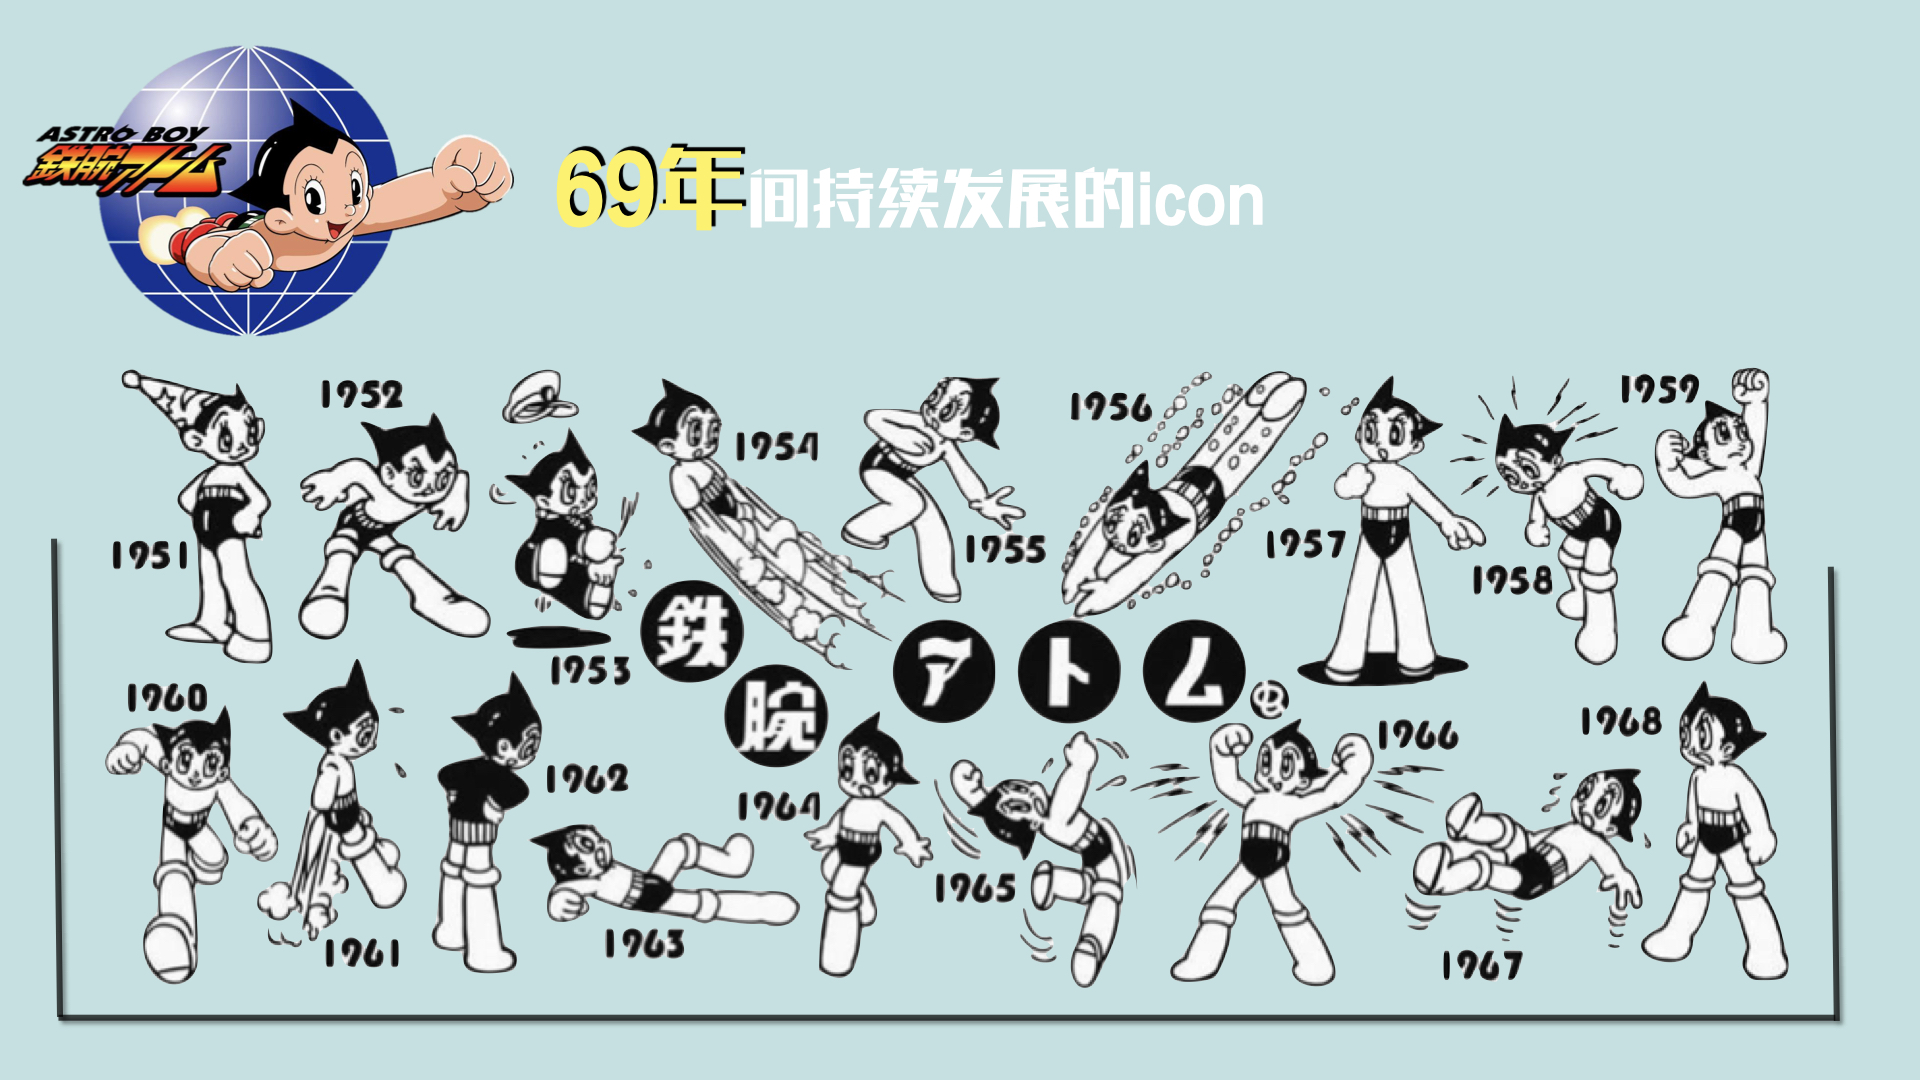 阿童木 Astro Boy IP资源介绍（冷先生 13810162596 袁先生 159 26339977） 2.005.jpeg